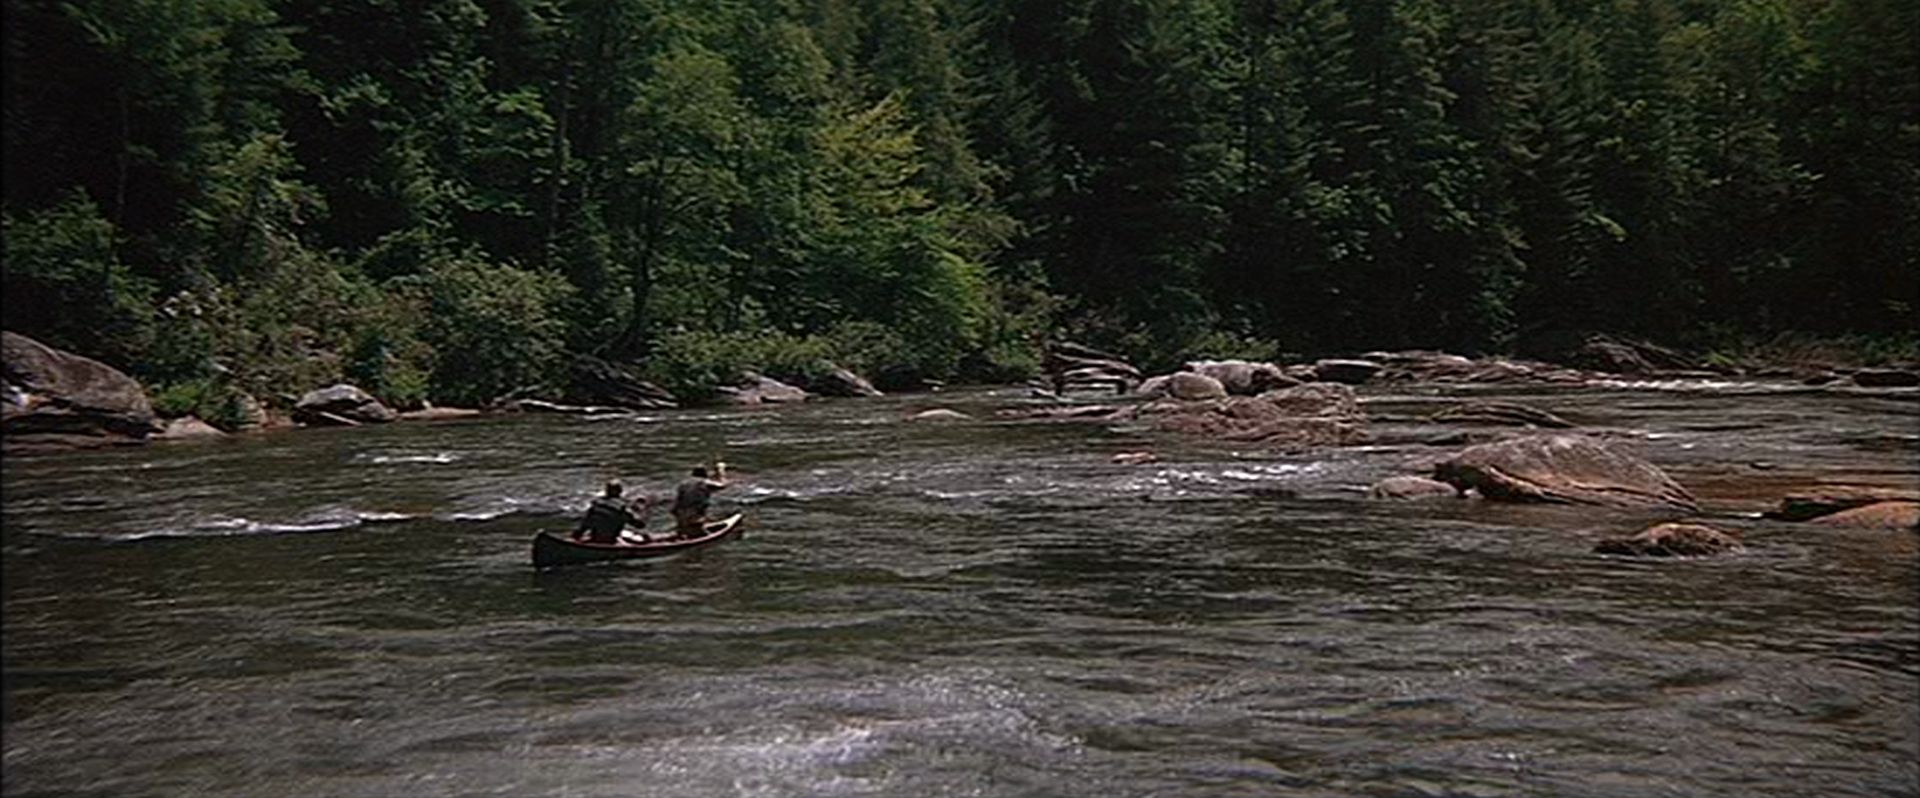 Blick aus der Distanz auf zwei Männer im Kanu im reißenden Fluss.